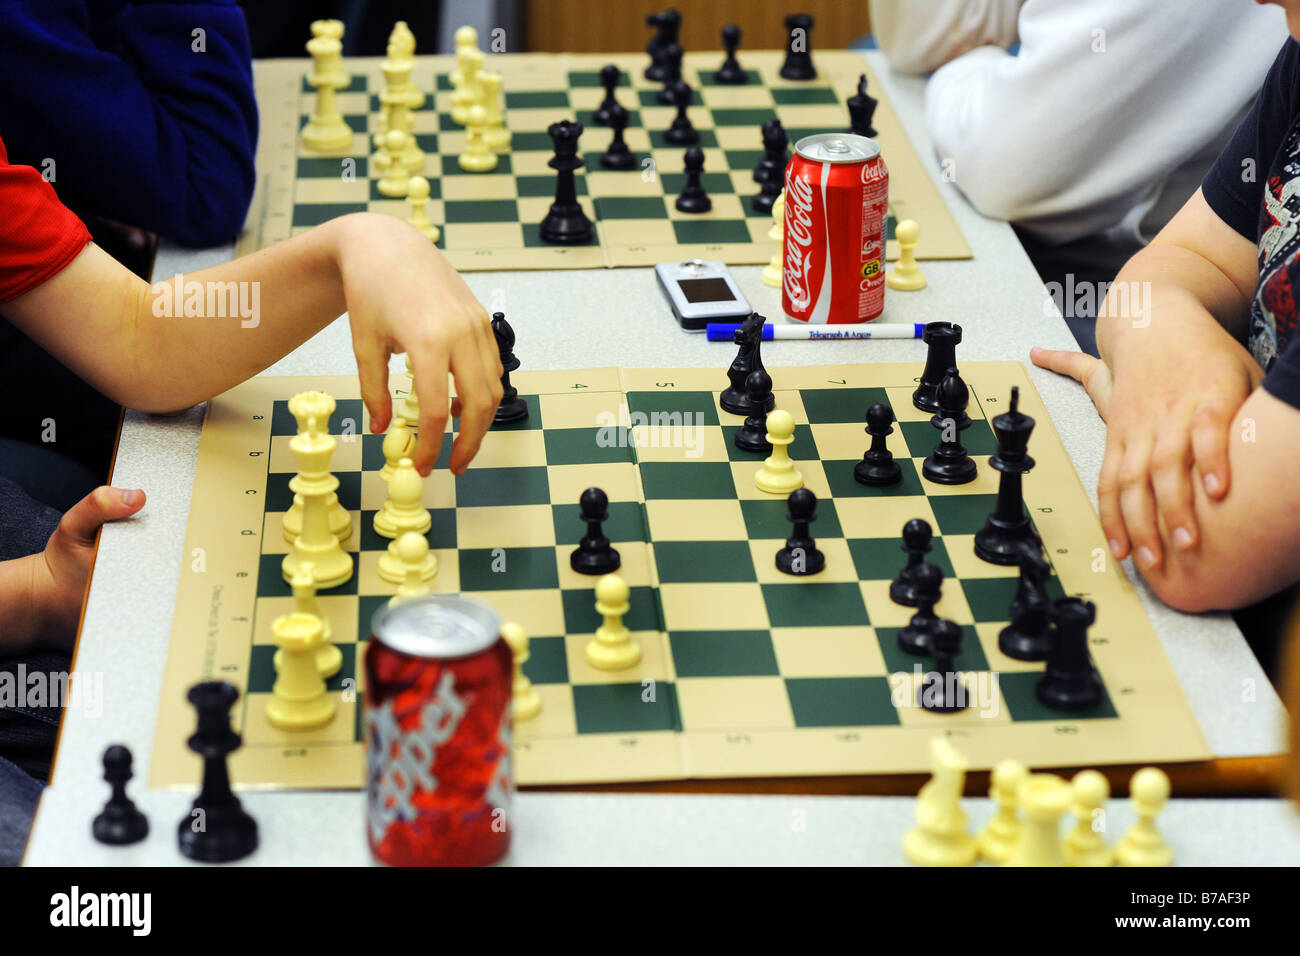 Les garçons jouer aux échecs comme thérapie pour améliorer la santé mentale Banque D'Images